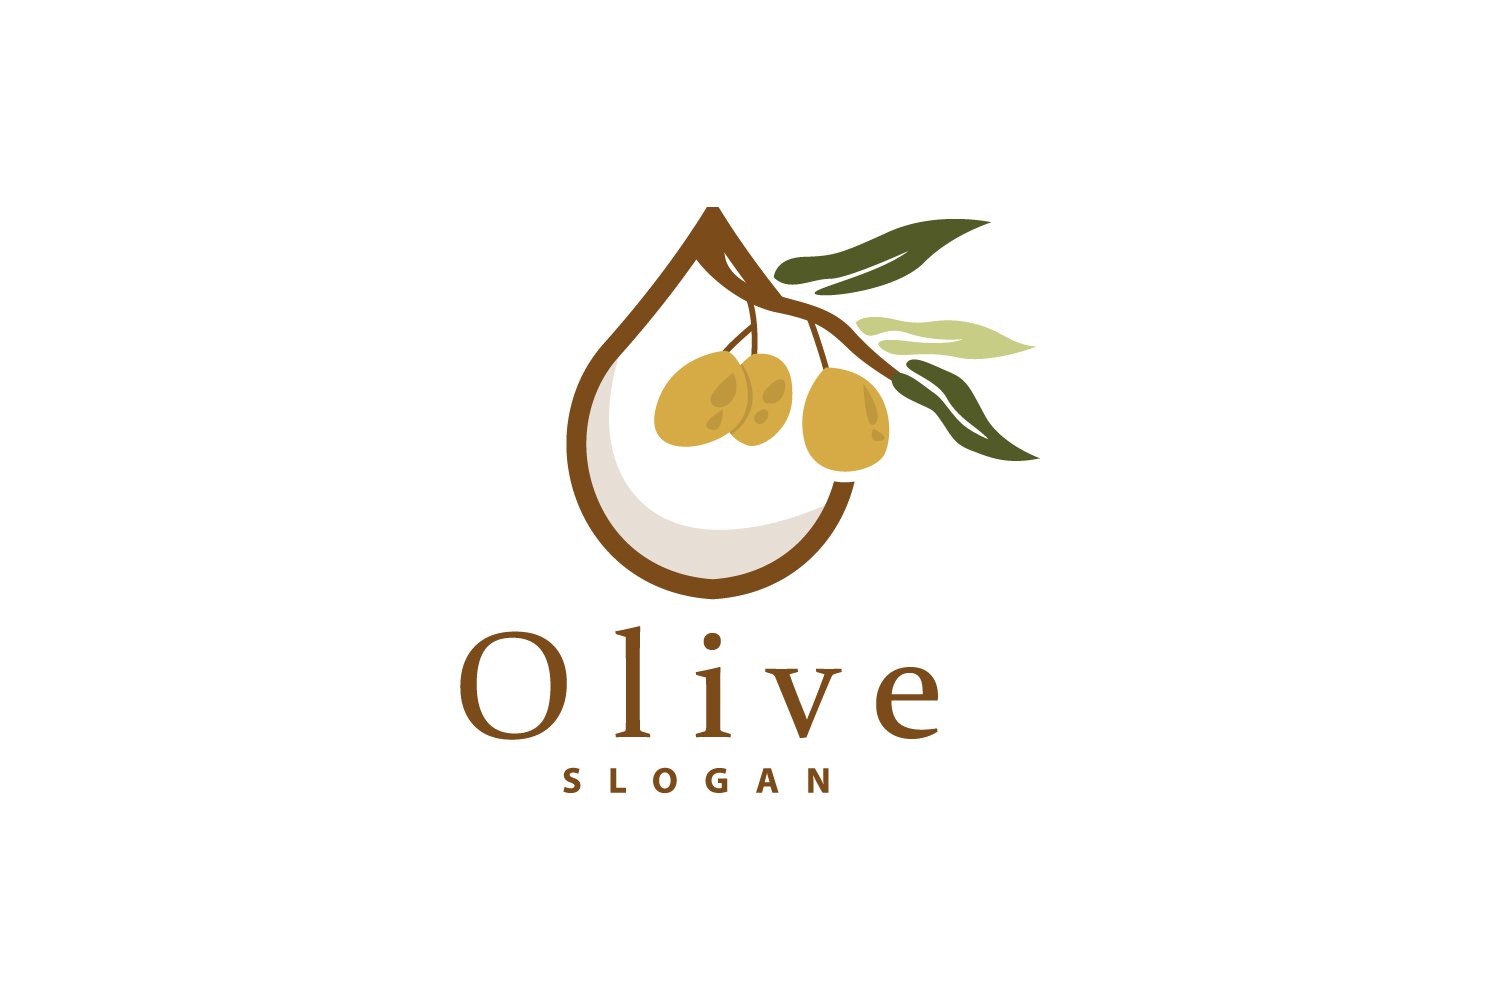 Olive Oil Logo Olive Leaf PlantV23